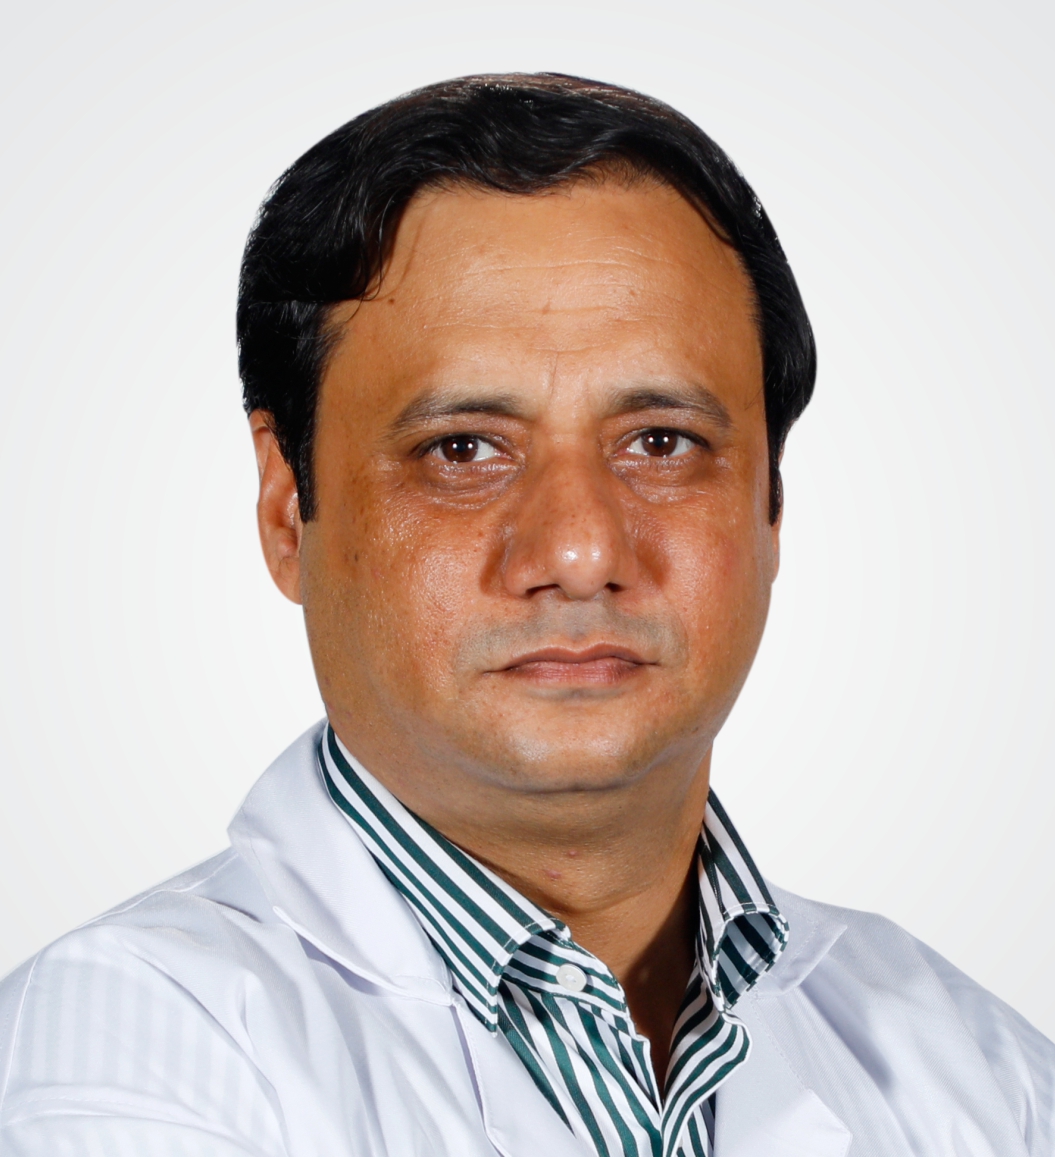 Dr. Mukesh N. Sharma